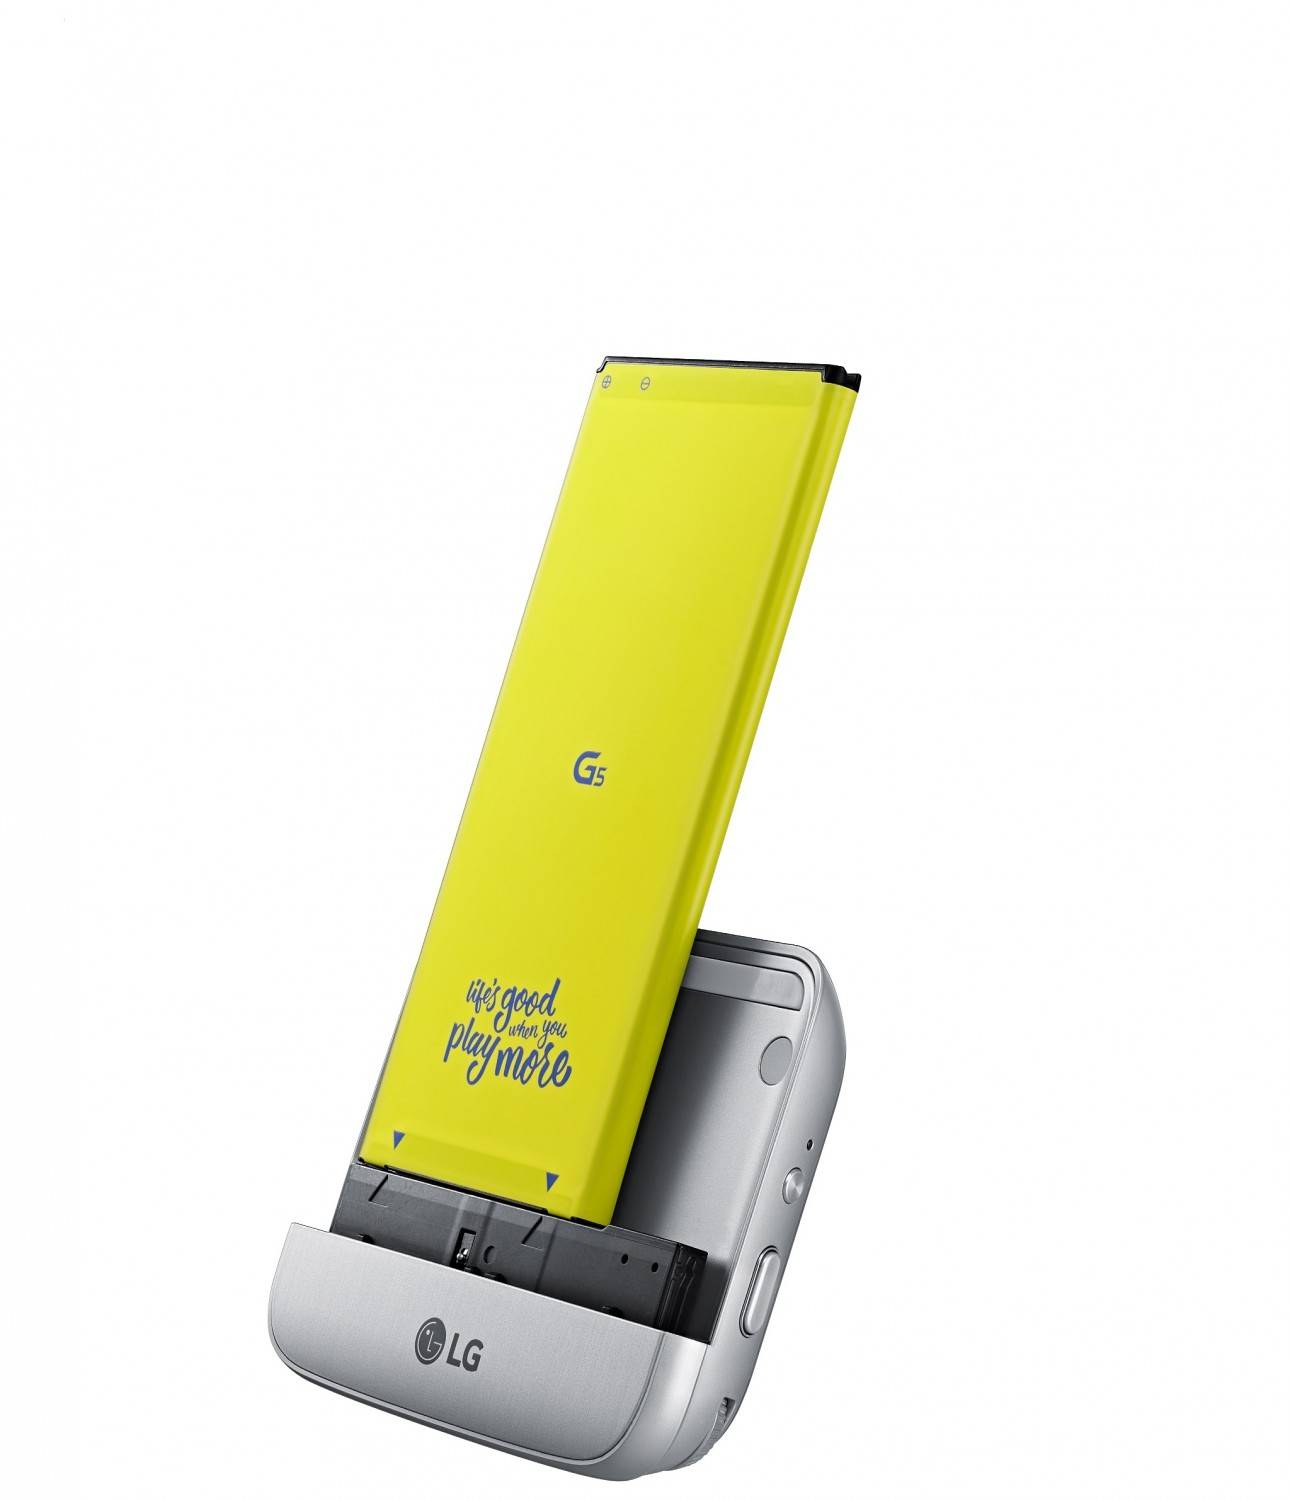 mobile Devices LG stellt neues Smartphone G5 vor: Modulares System - Digitalkamera oder HiFi-Anlage - News, Bild 2